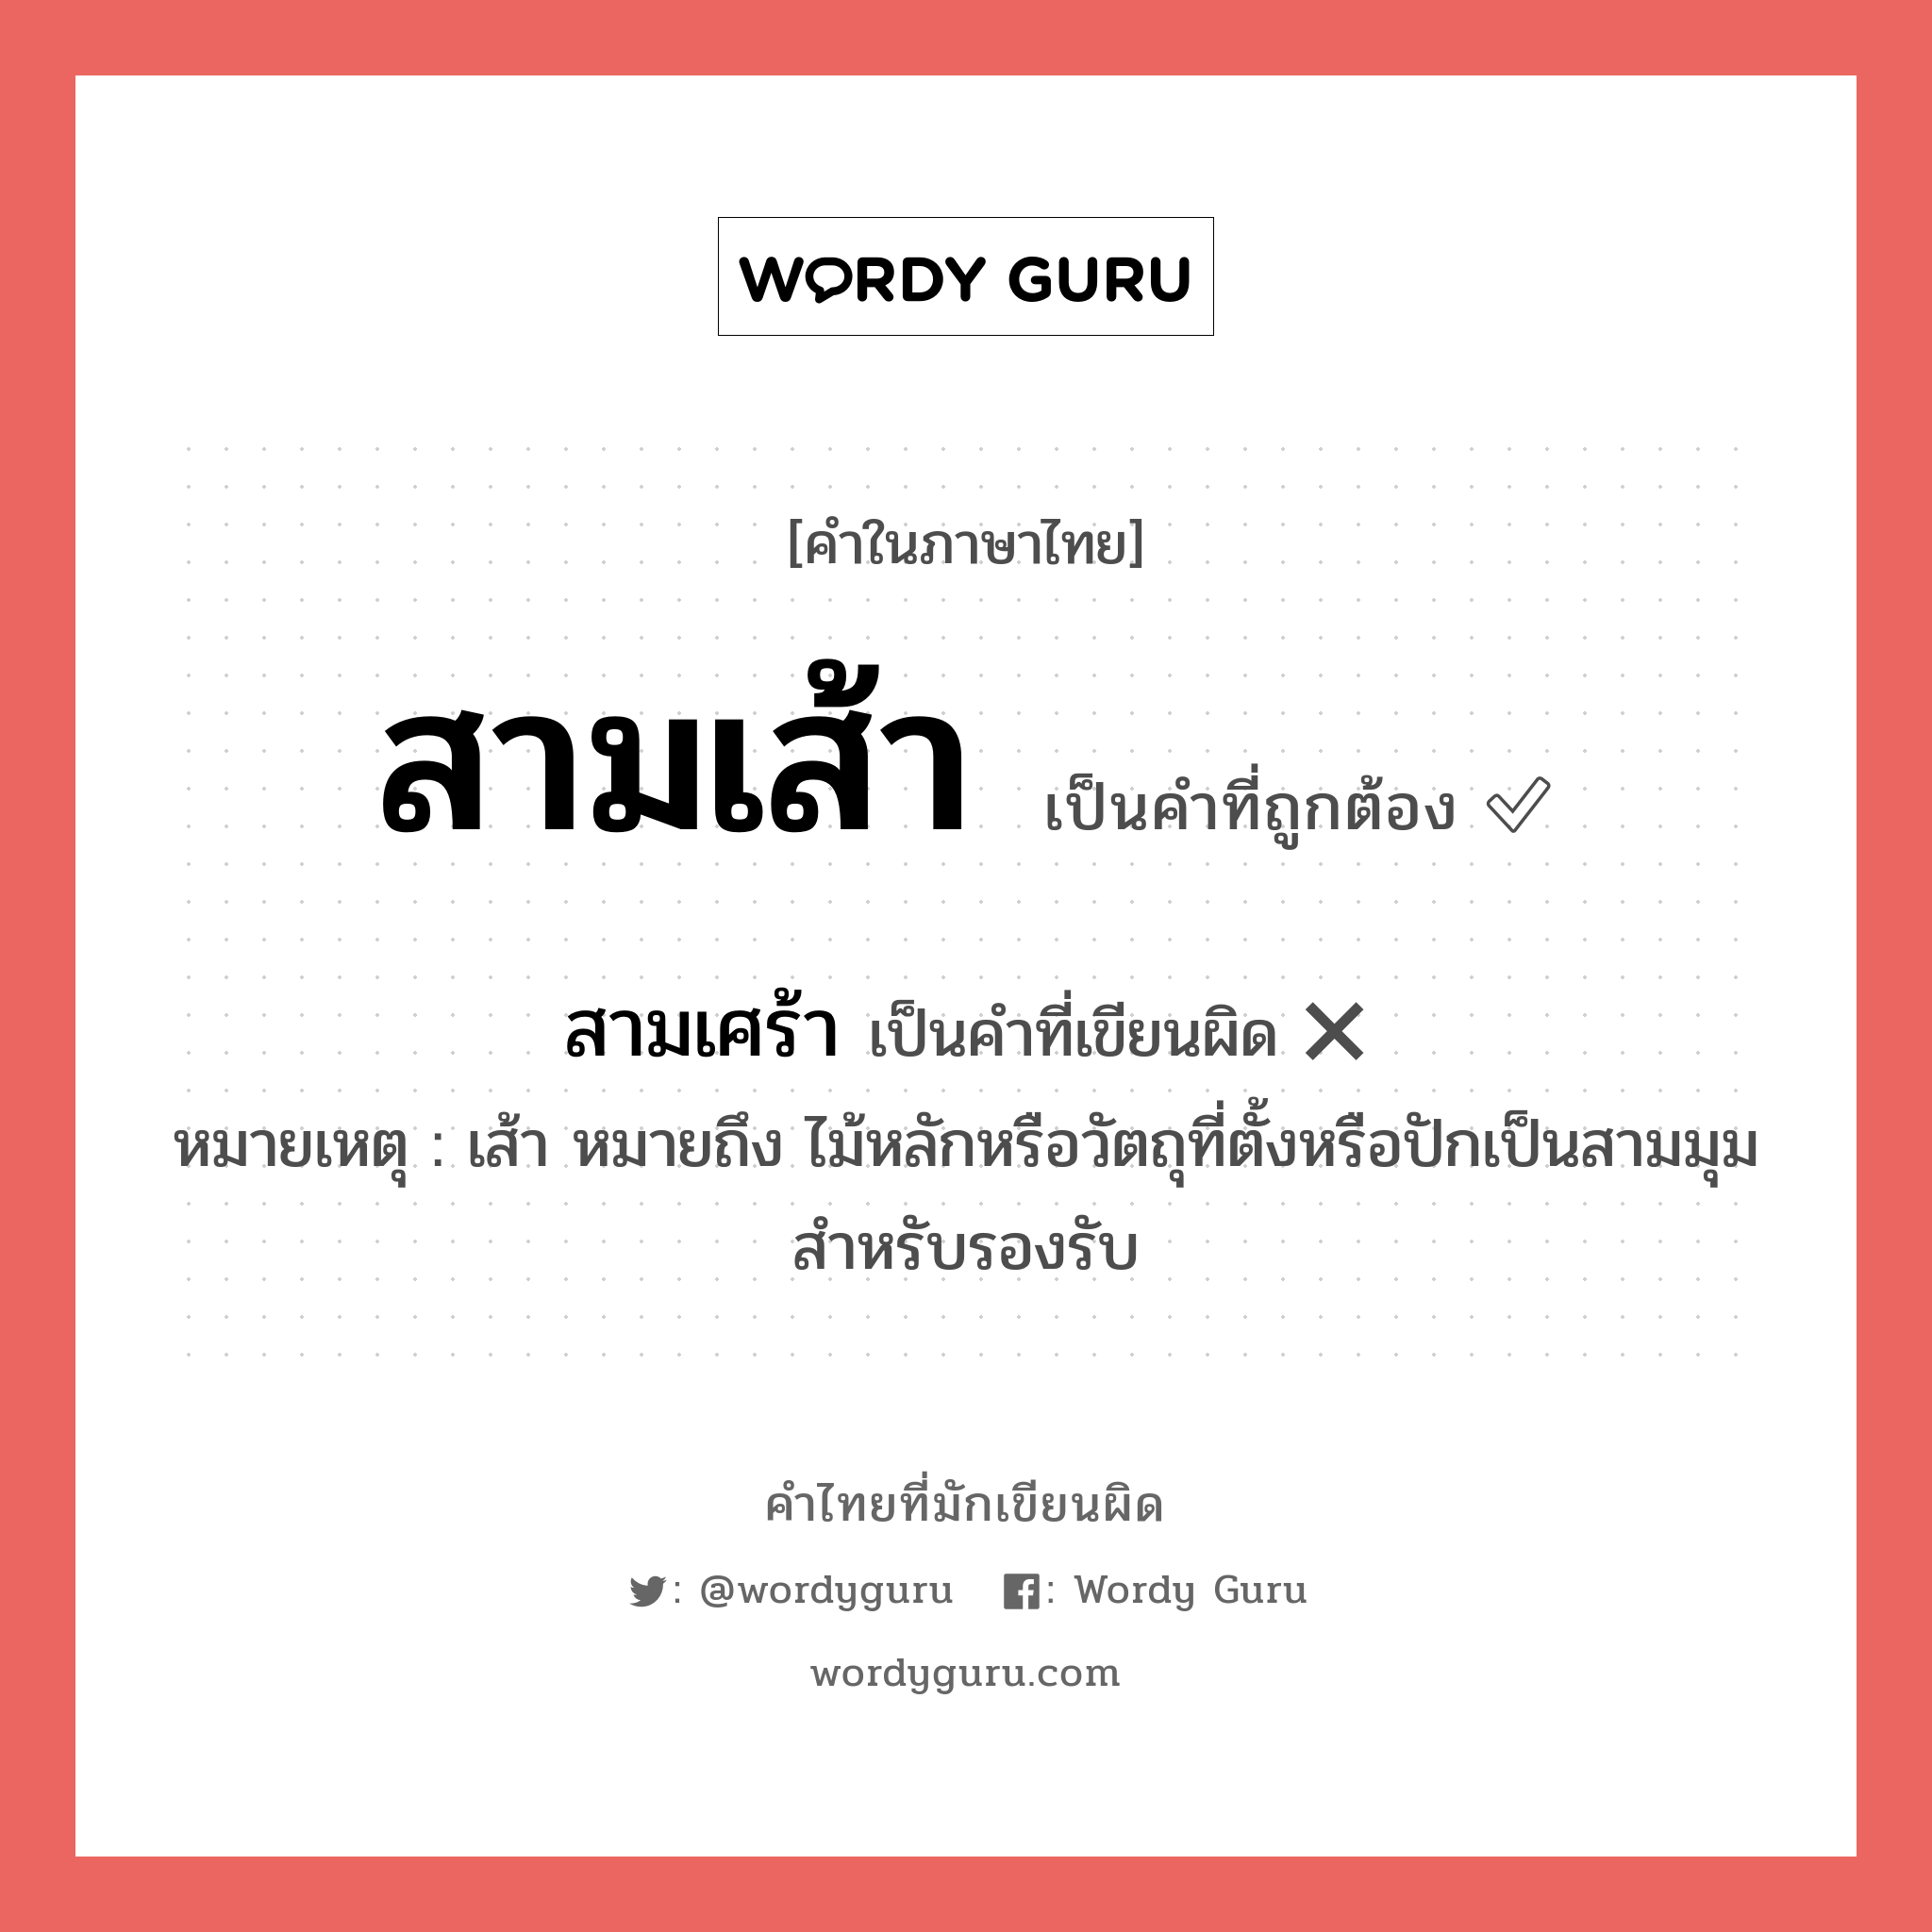 สามเศร้า หรือ สามเส้า คำไหนเขียนถูก?, คำในภาษาไทยที่มักเขียนผิด สามเศร้า คำที่ผิด ❌ สามเส้า หมายเหตุ เส้า หมายถึง ไม้หลักหรือวัตถุที่ตั้งหรือปักเป็นสามมุมสำหรับรองรับ